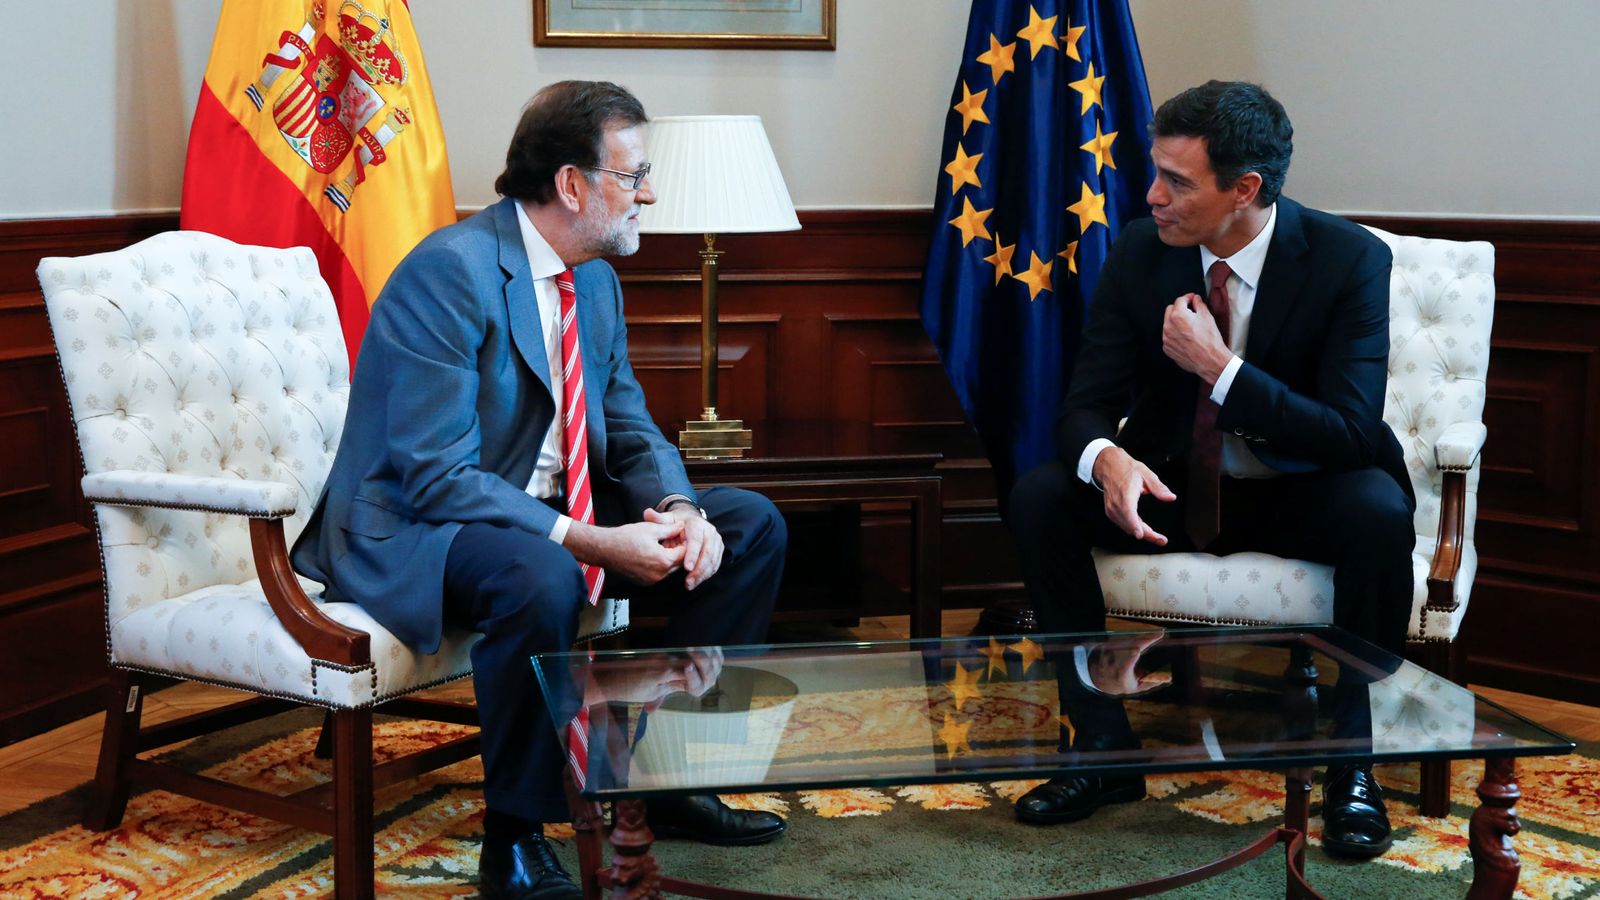 Foto: El presidente del Gobierno en funciones, Mariano Rajoy, con el líder del PSOE, Pedro Sánchez. (Reuters)